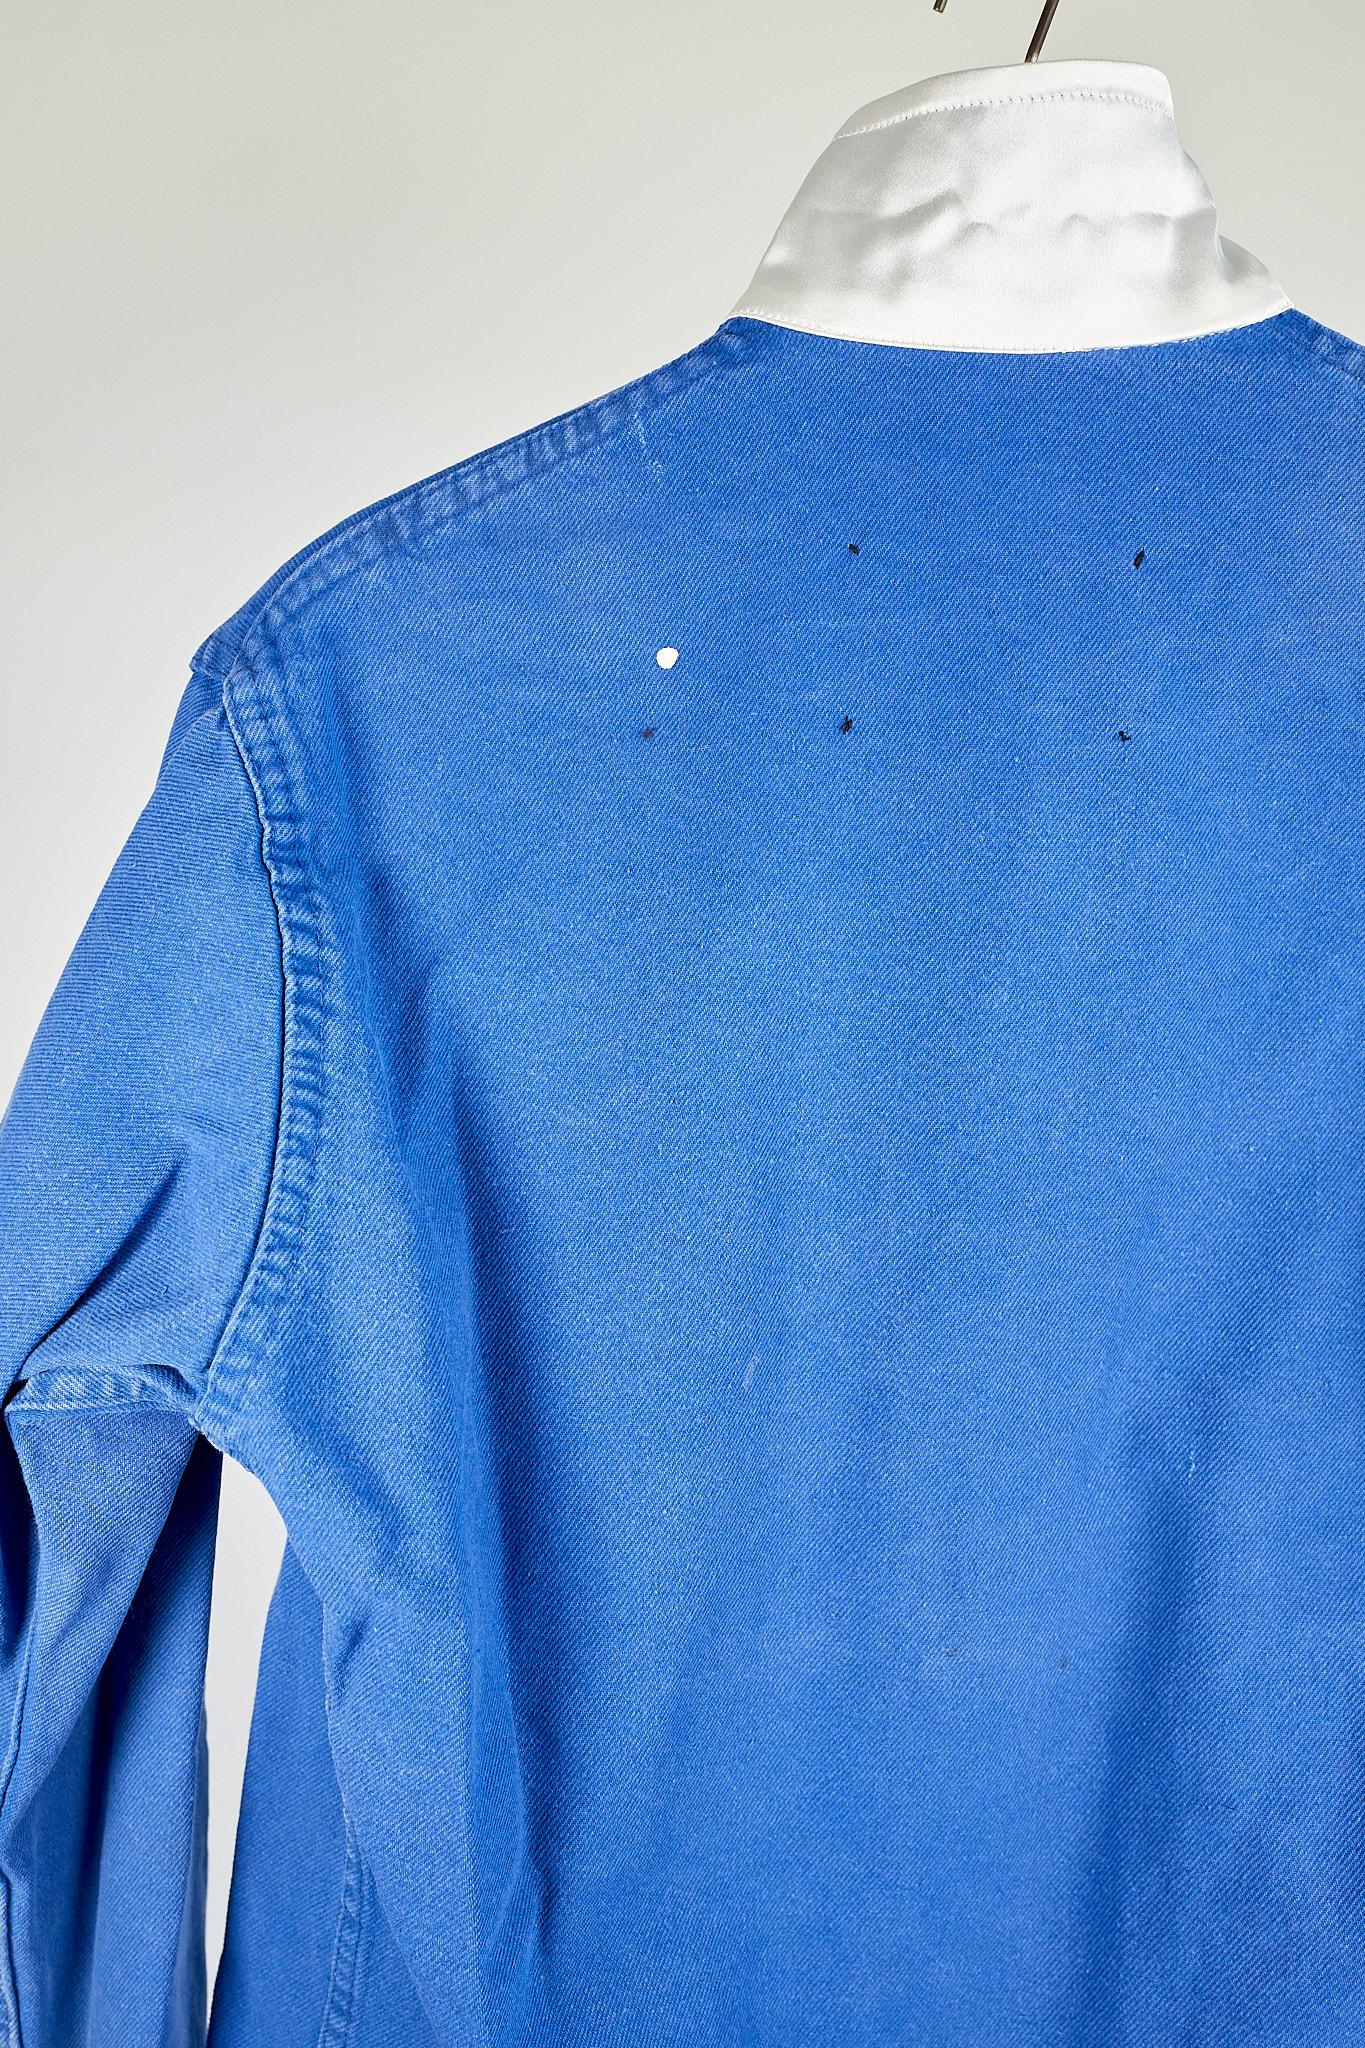 Blue Work Wear Jacket Vintage Silver Bullion Fringes Italian Silk 4